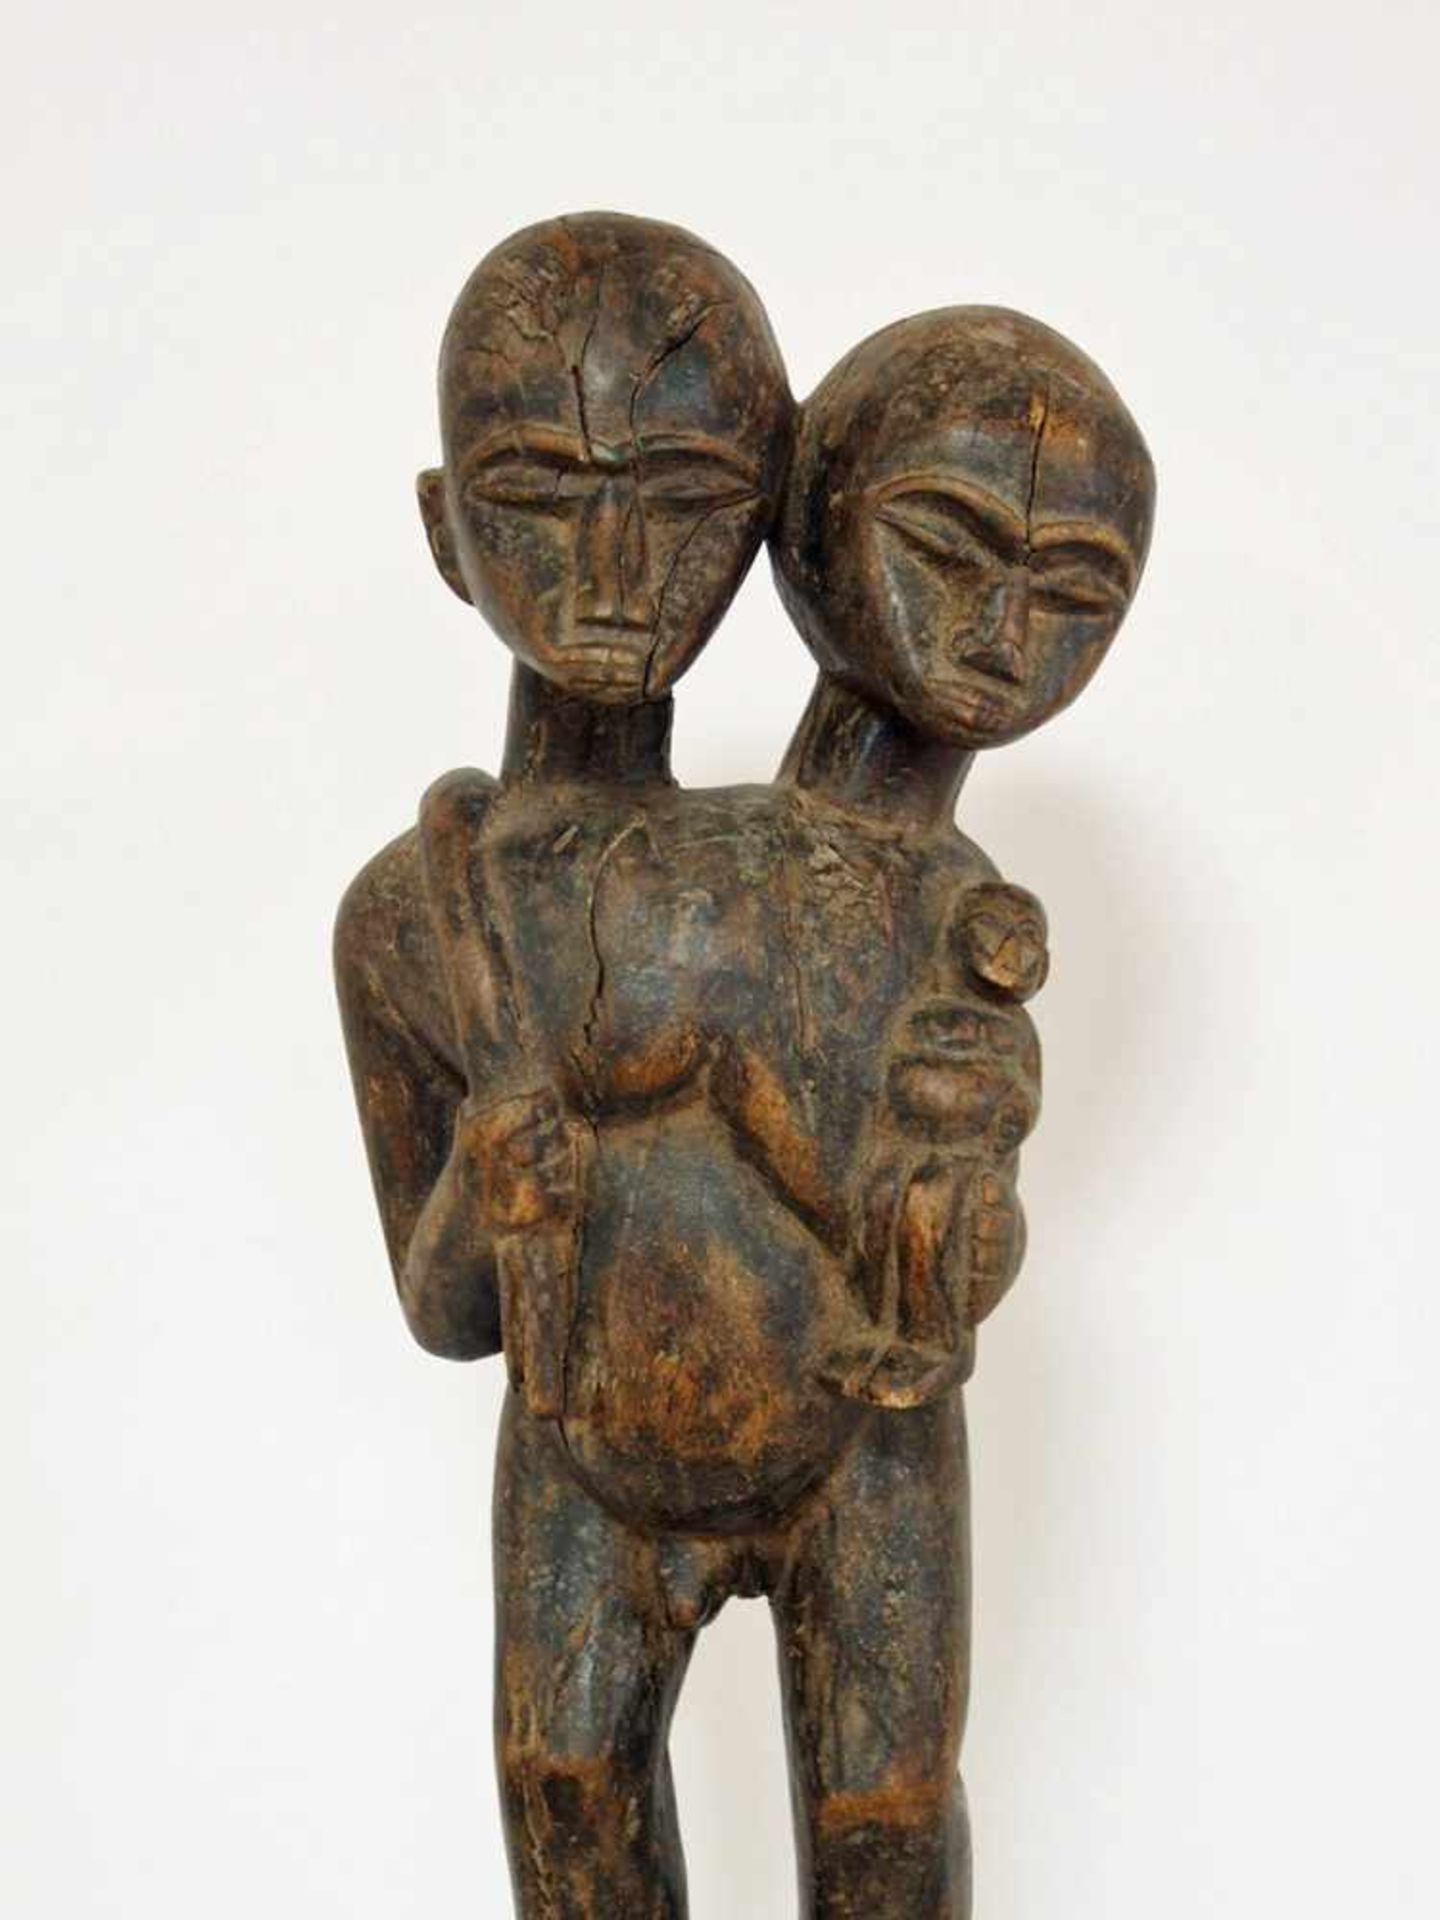 Stab mit ZwillingsfigurHolz, geschnitzt, Dogon, Mali, 1. Hälfte 20. Jahrhundert, Höhe 94 cm- - -25. - Bild 2 aus 3